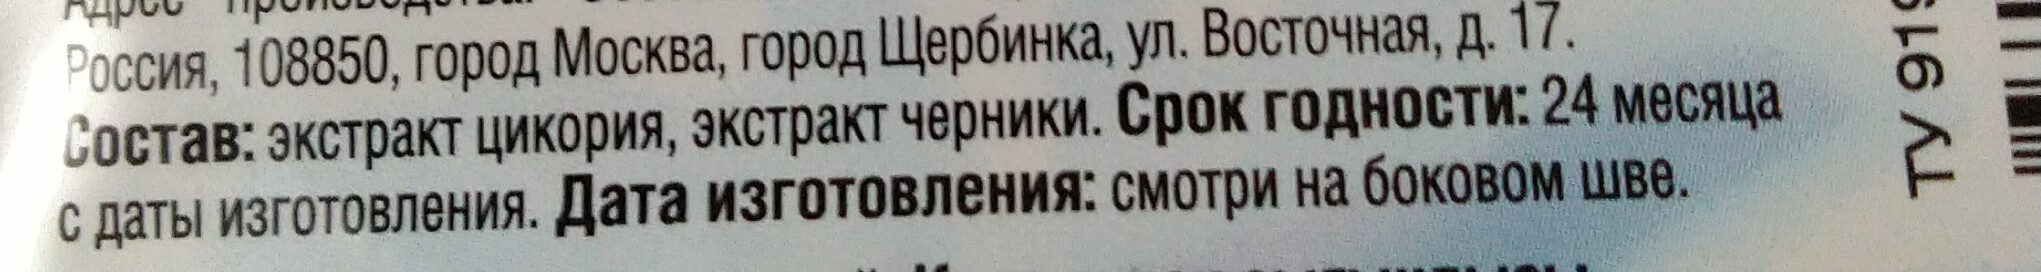 цикорий растворимый - Ingredients - ru